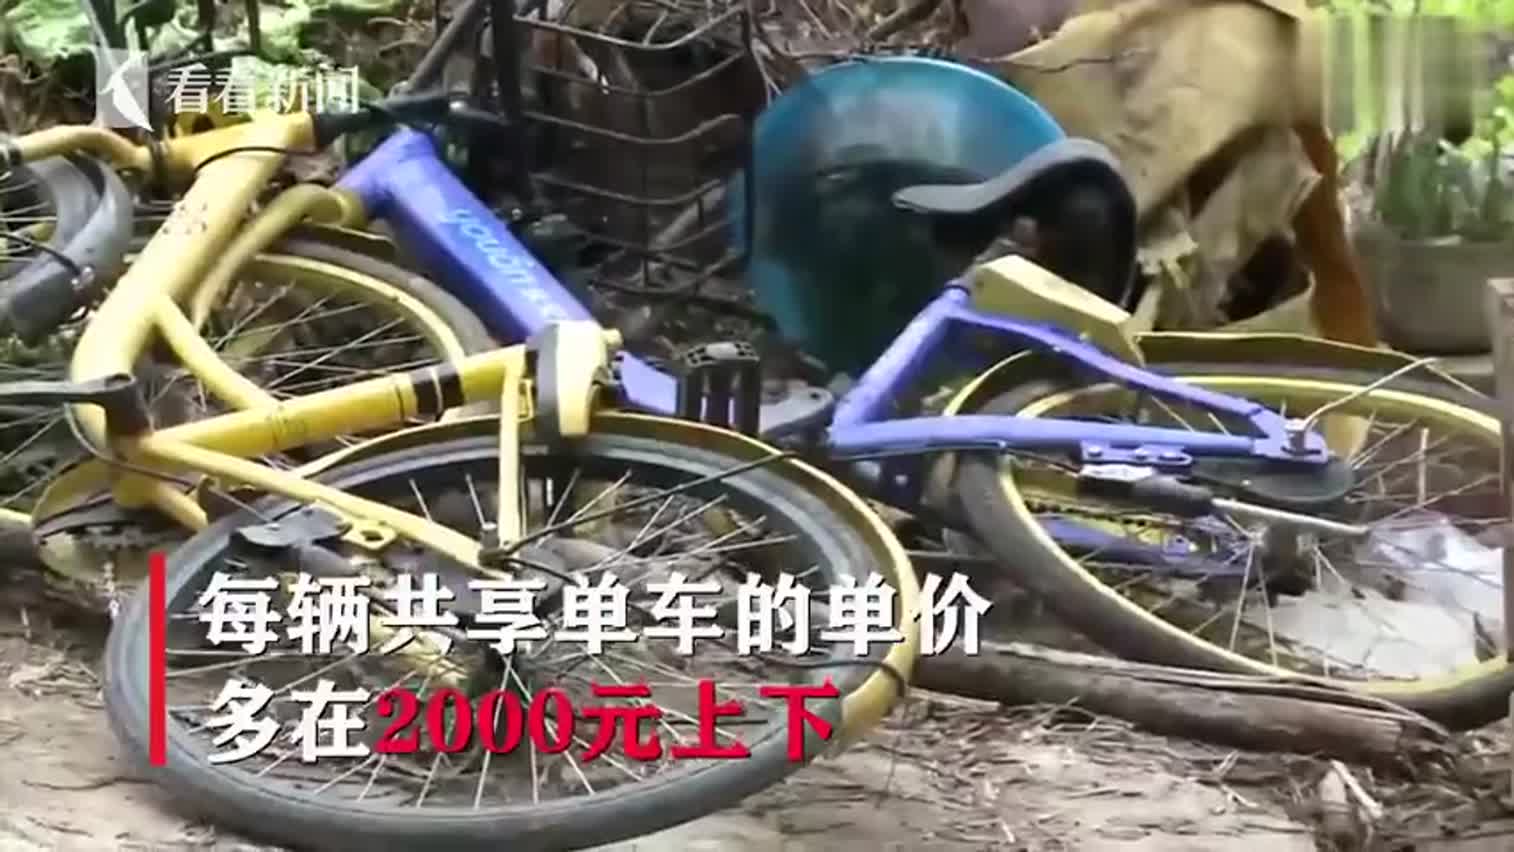 视频-熊孩子恶意破坏共享单车 将其堆在路边